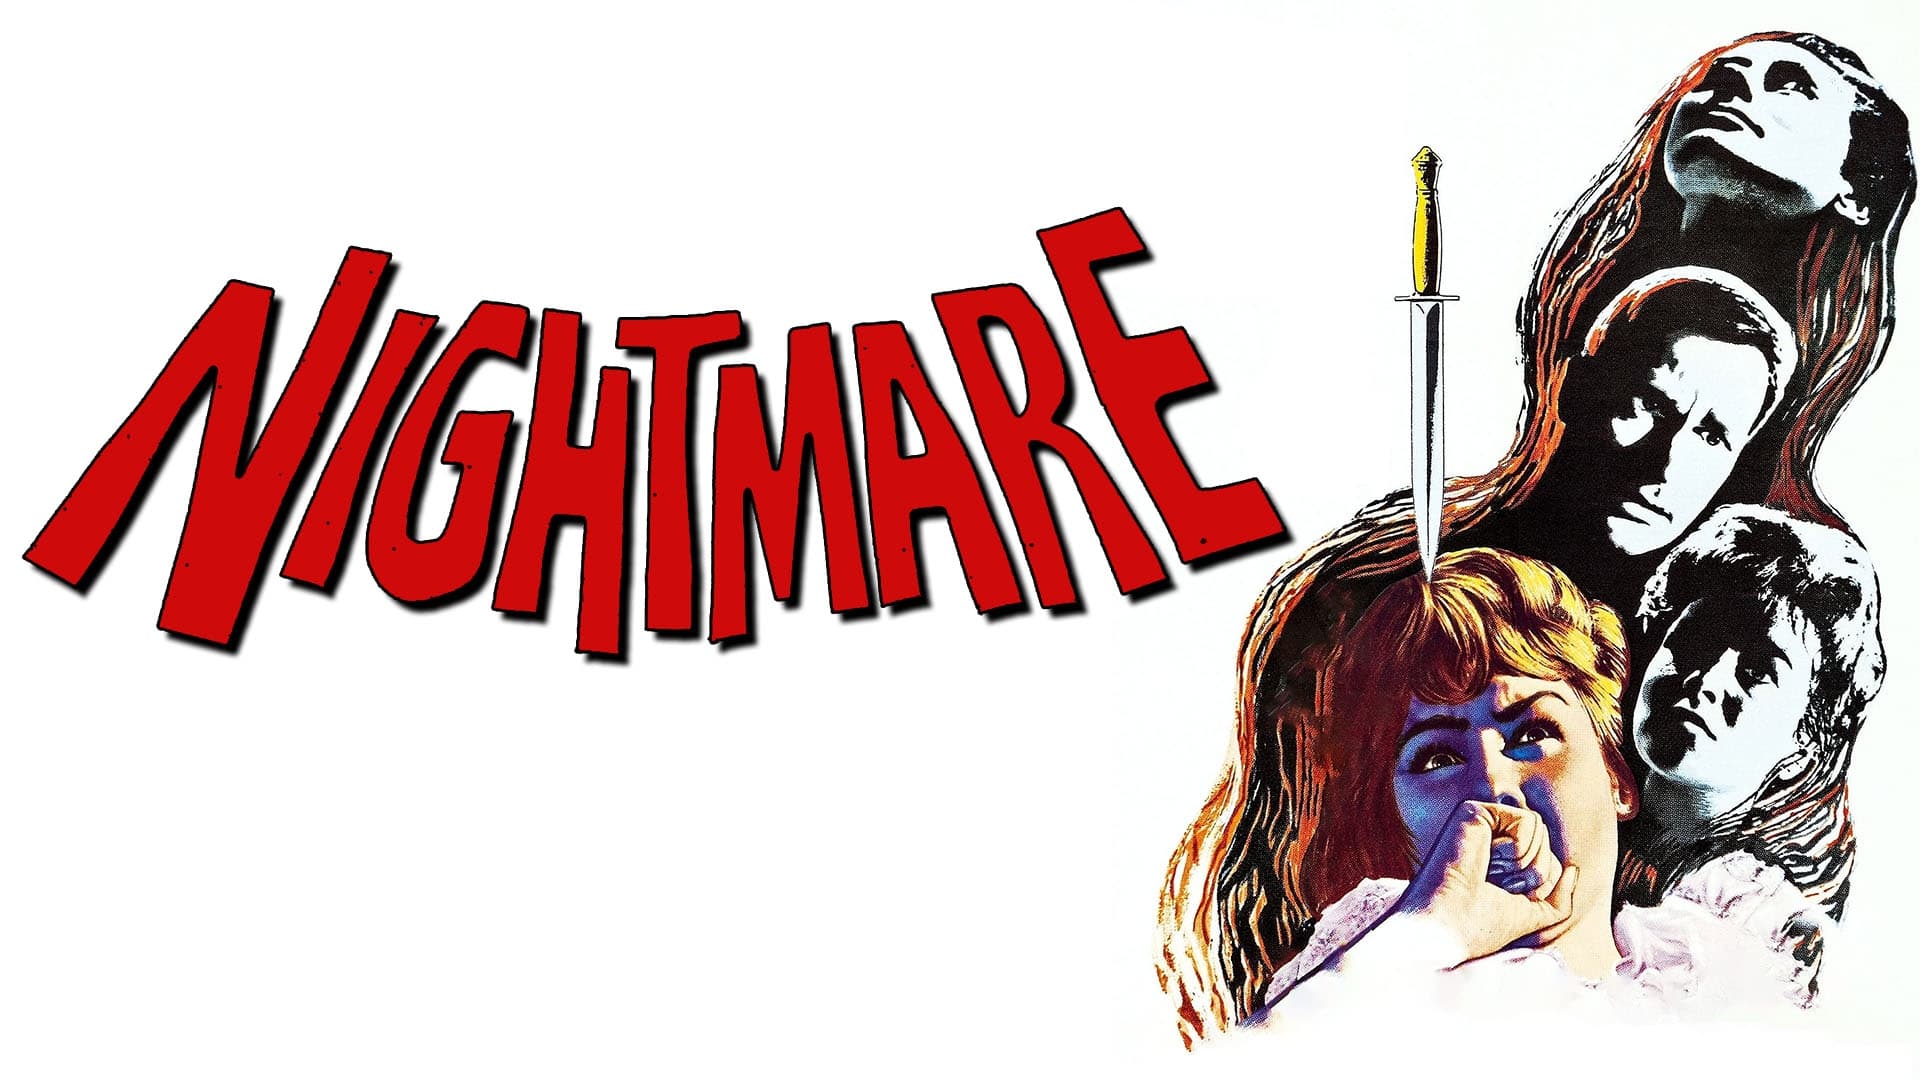 Nightmare (1964)